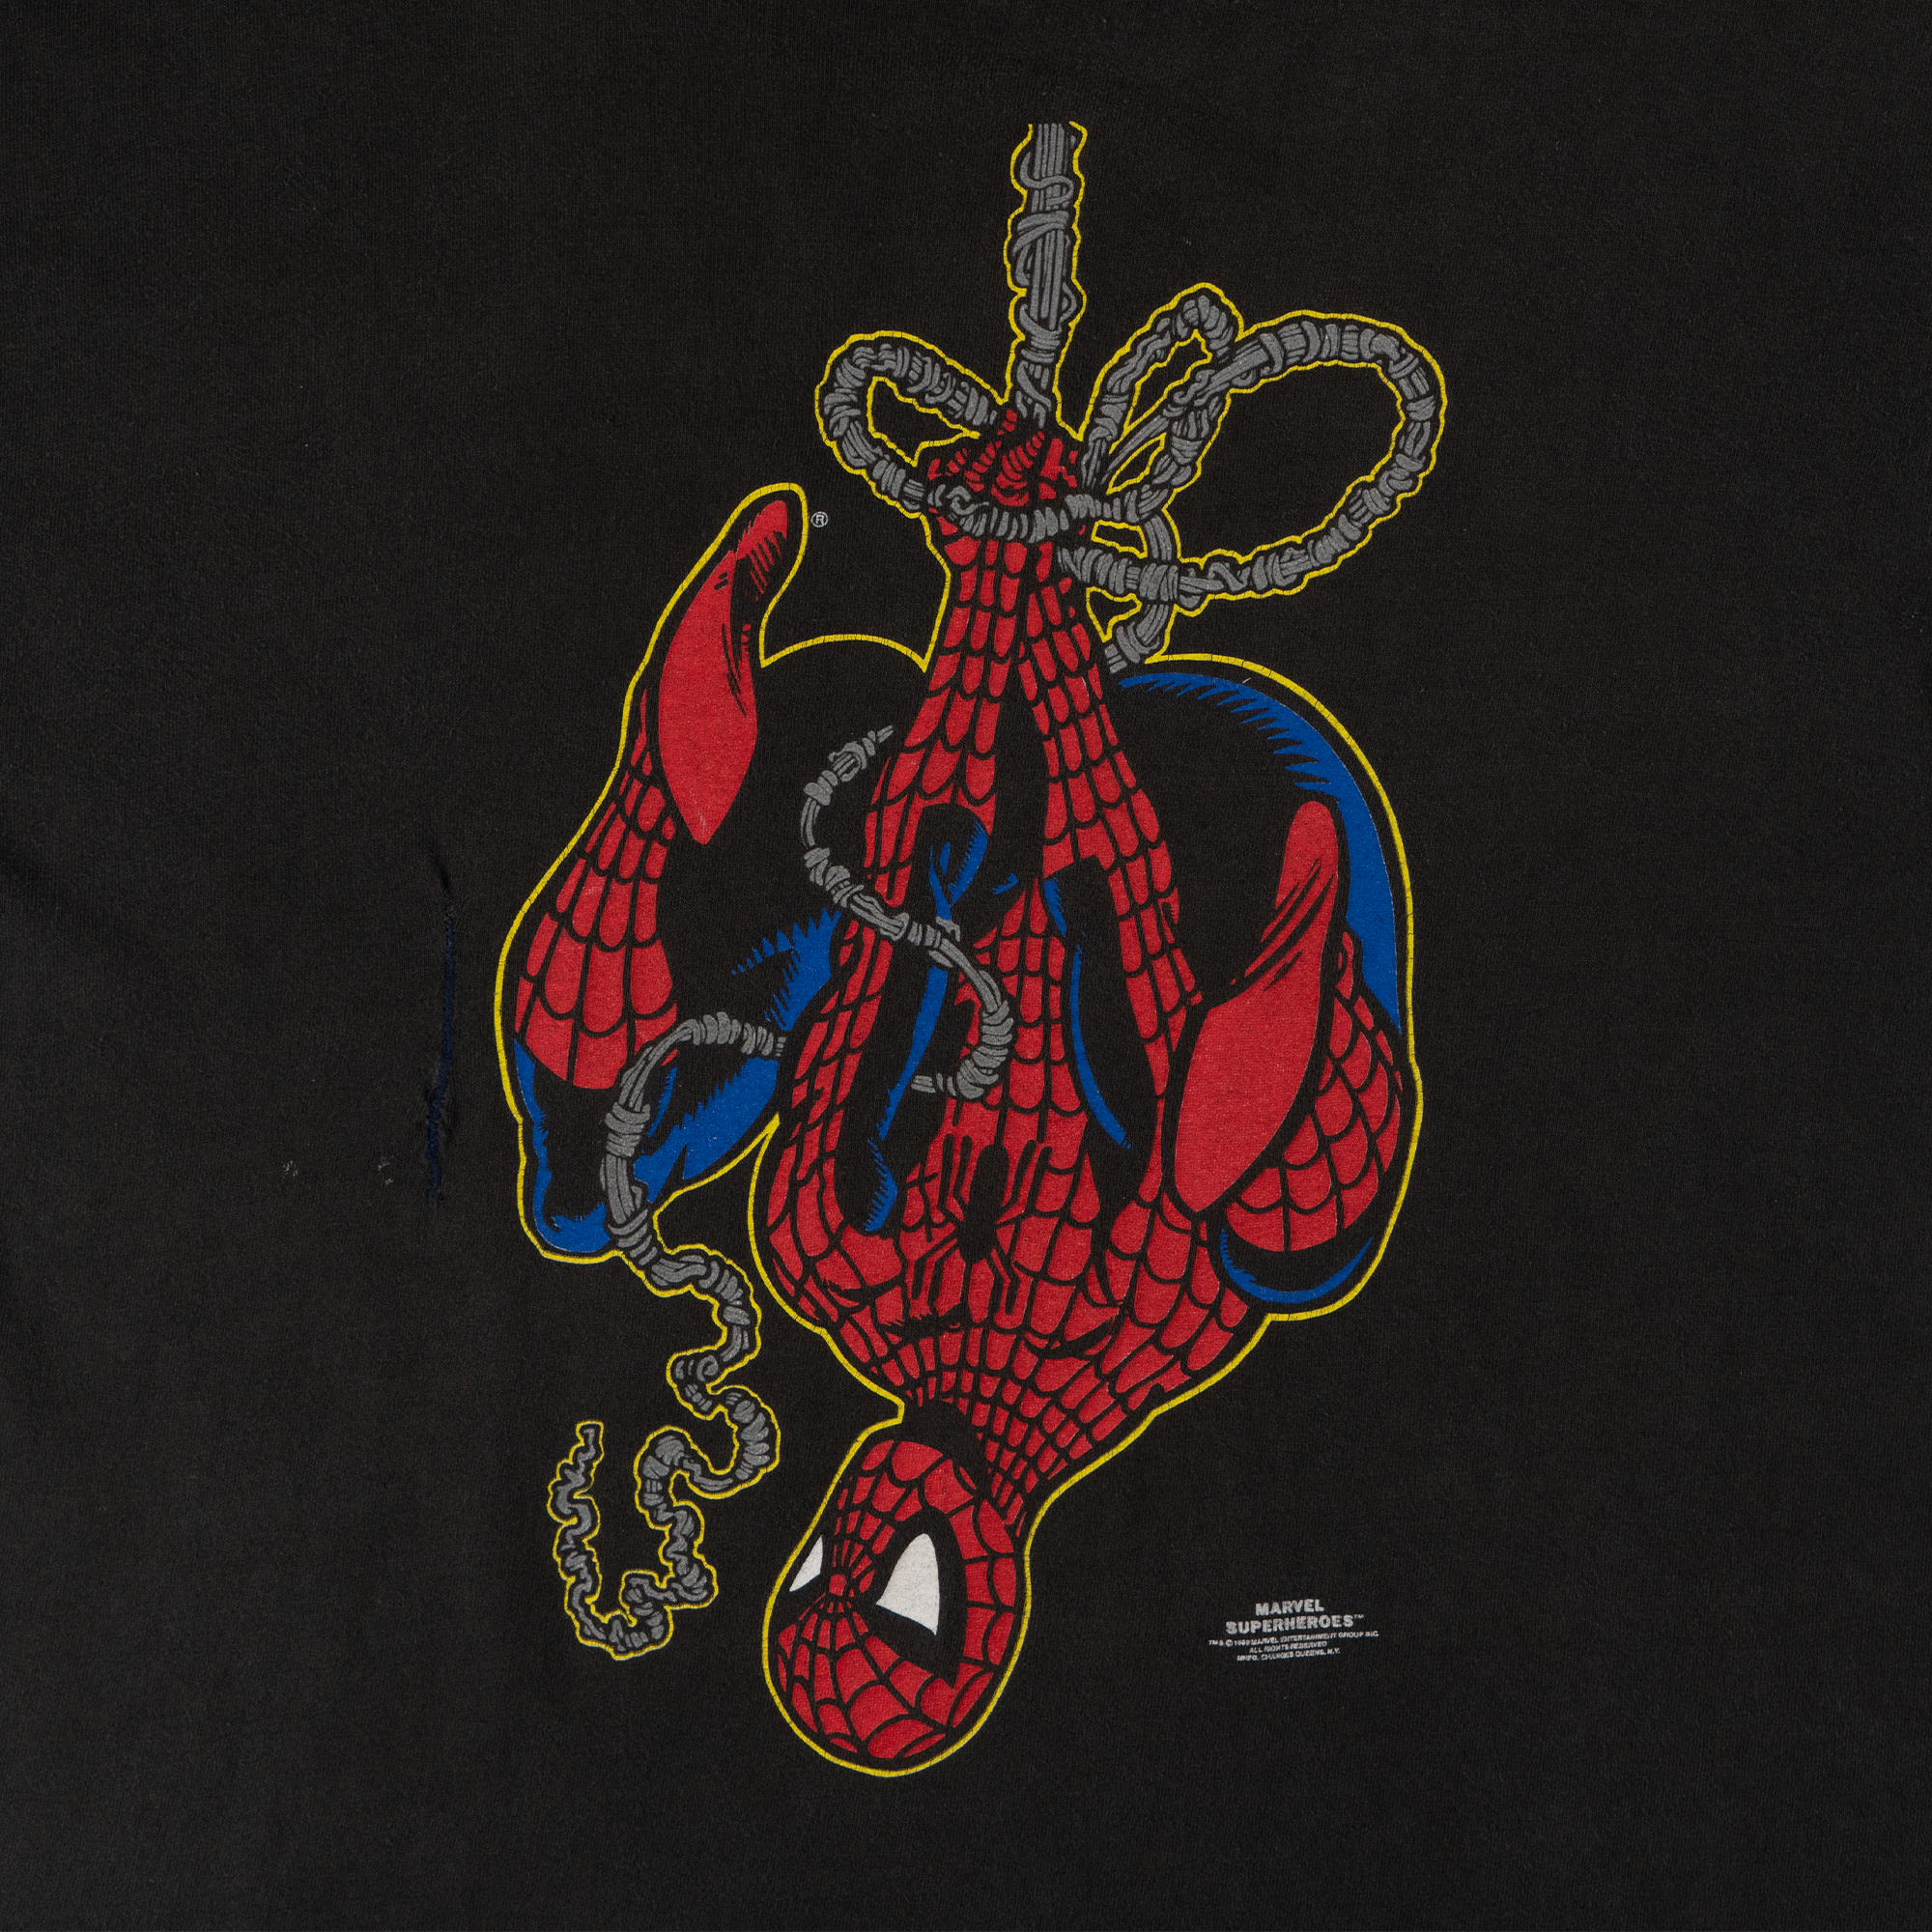 Spiderman 1989 Marvel Superheroes Tee Black-PLUS